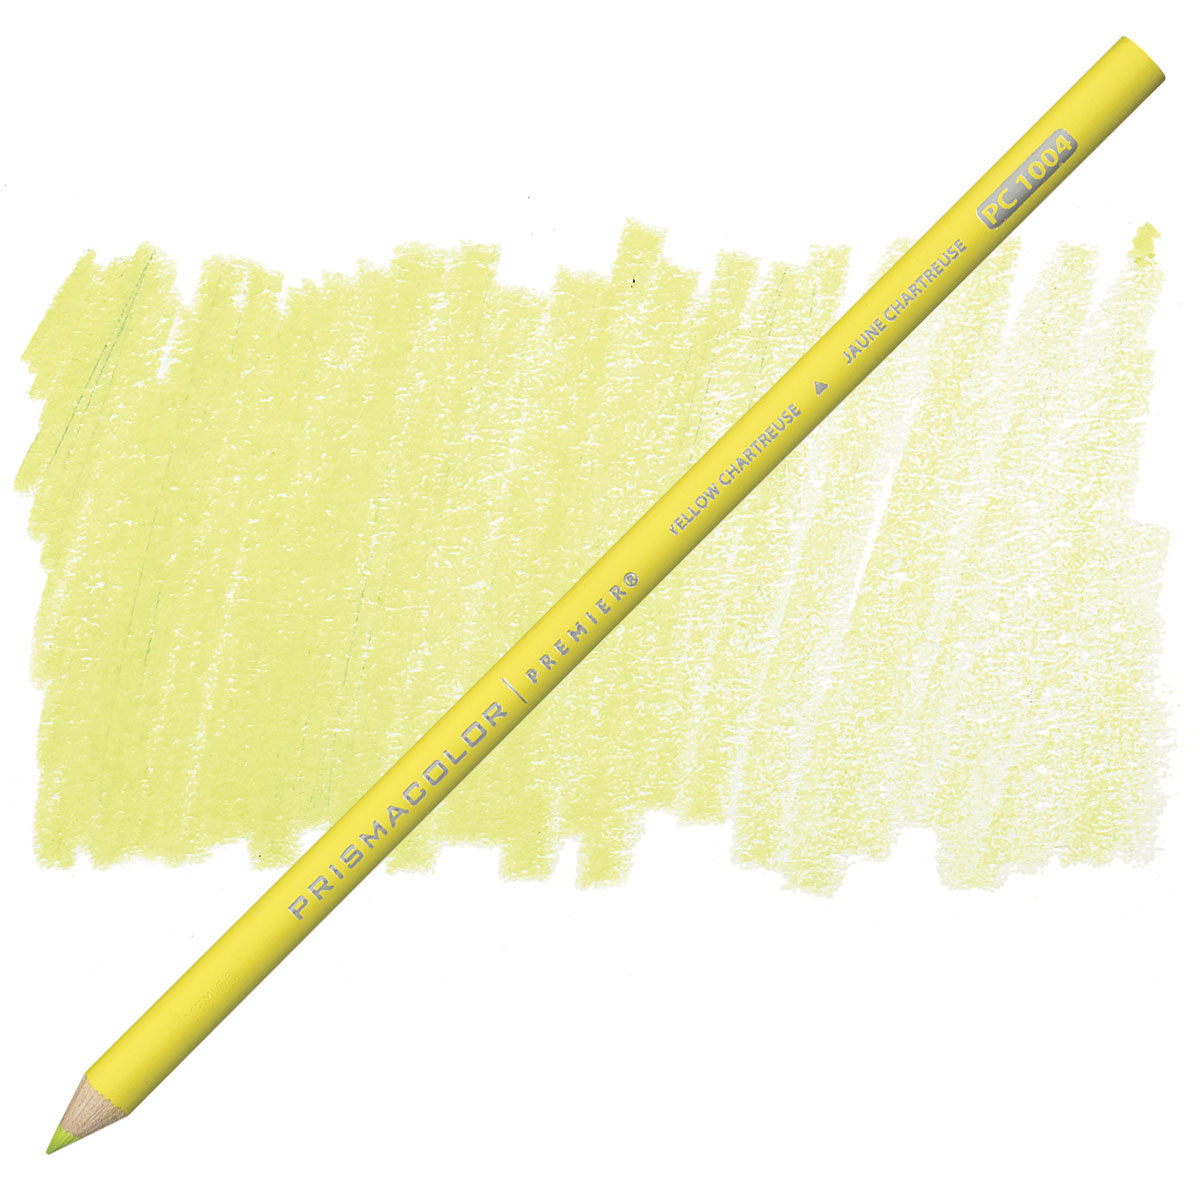 Prismacolor Premier Colored Pencil - Parrot Green